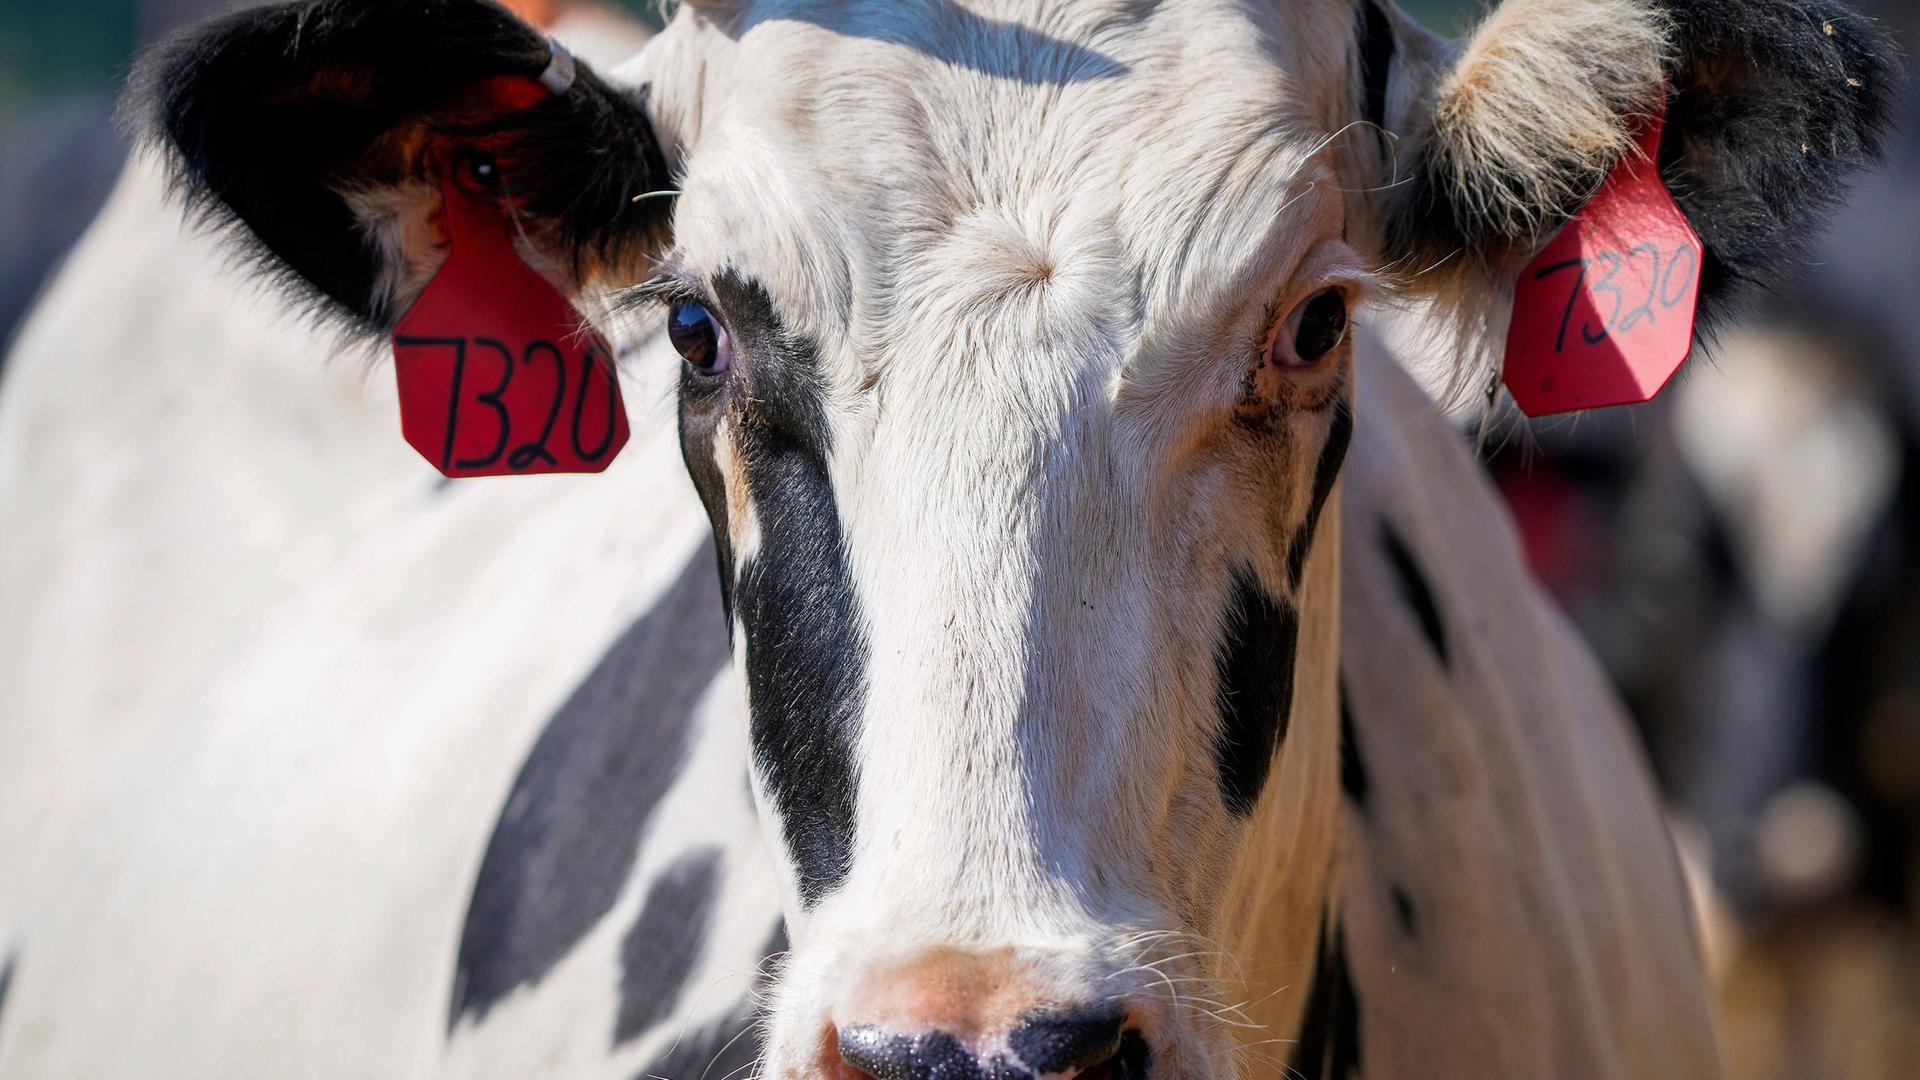 Zu sehen ist eine Milch-Kuh im US-Bundes-Staat Texas.